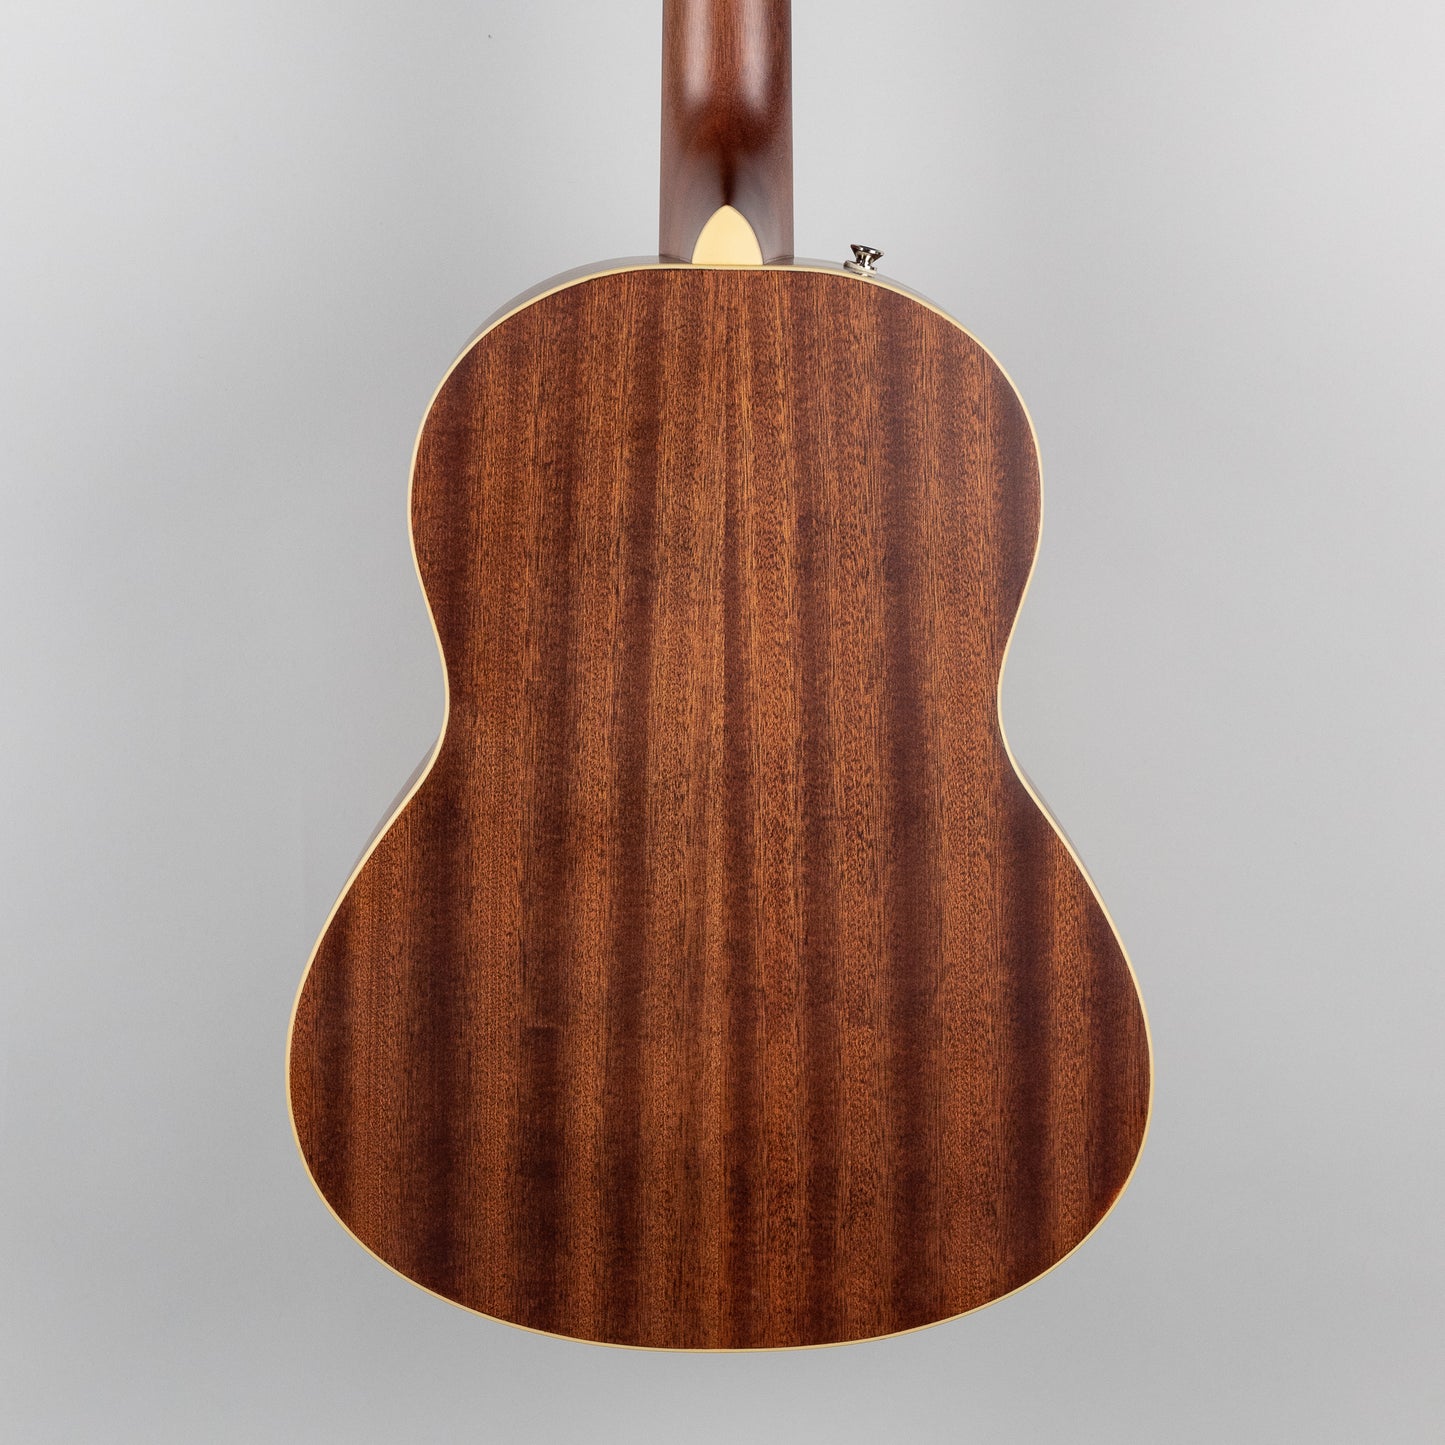 Fender Sonoran Mini Acoustic Guitar, Natural